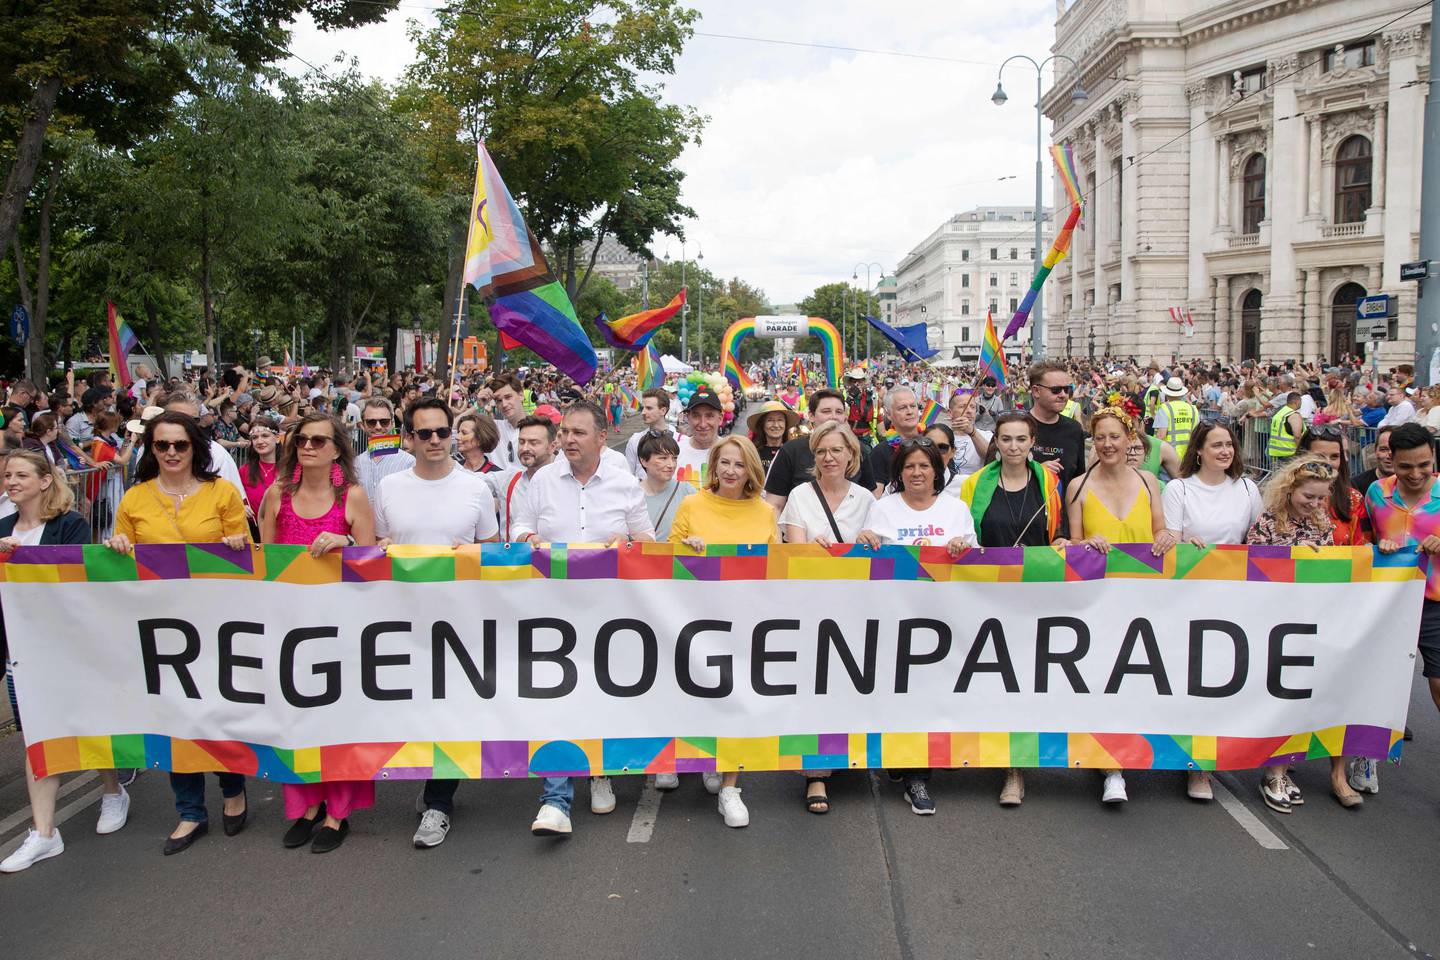 Pride-paraden i Wien har i årevis vært blant Europas største og mest populære. Søndag fortalte Østerriksk politi at de har avverget et terrorangrep mot årets parade.